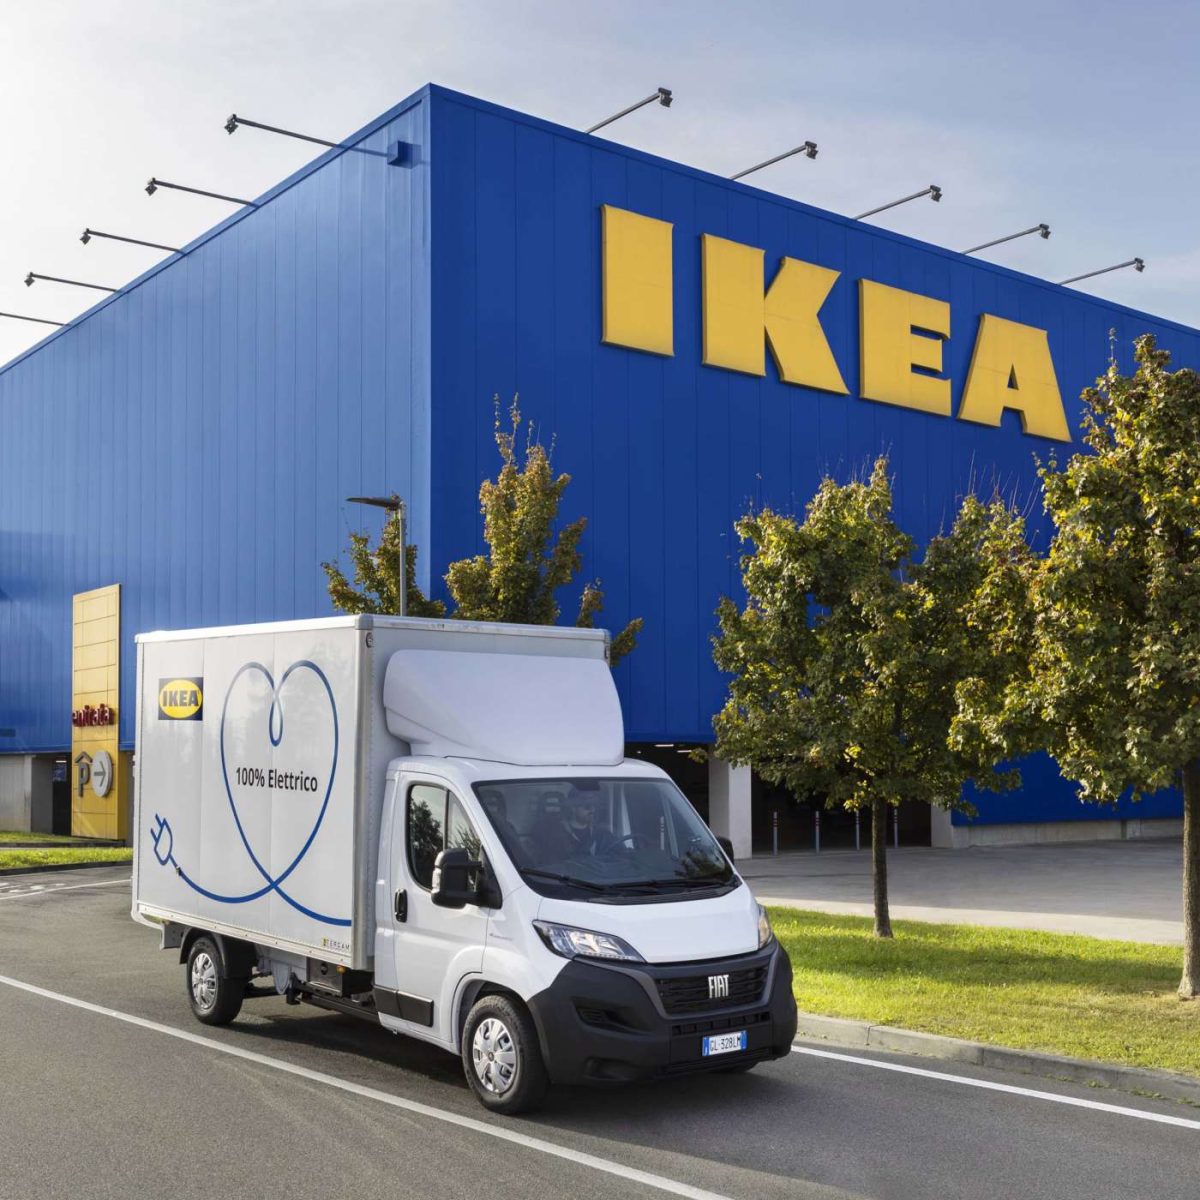 Ikea consegne con veicoli elettrici